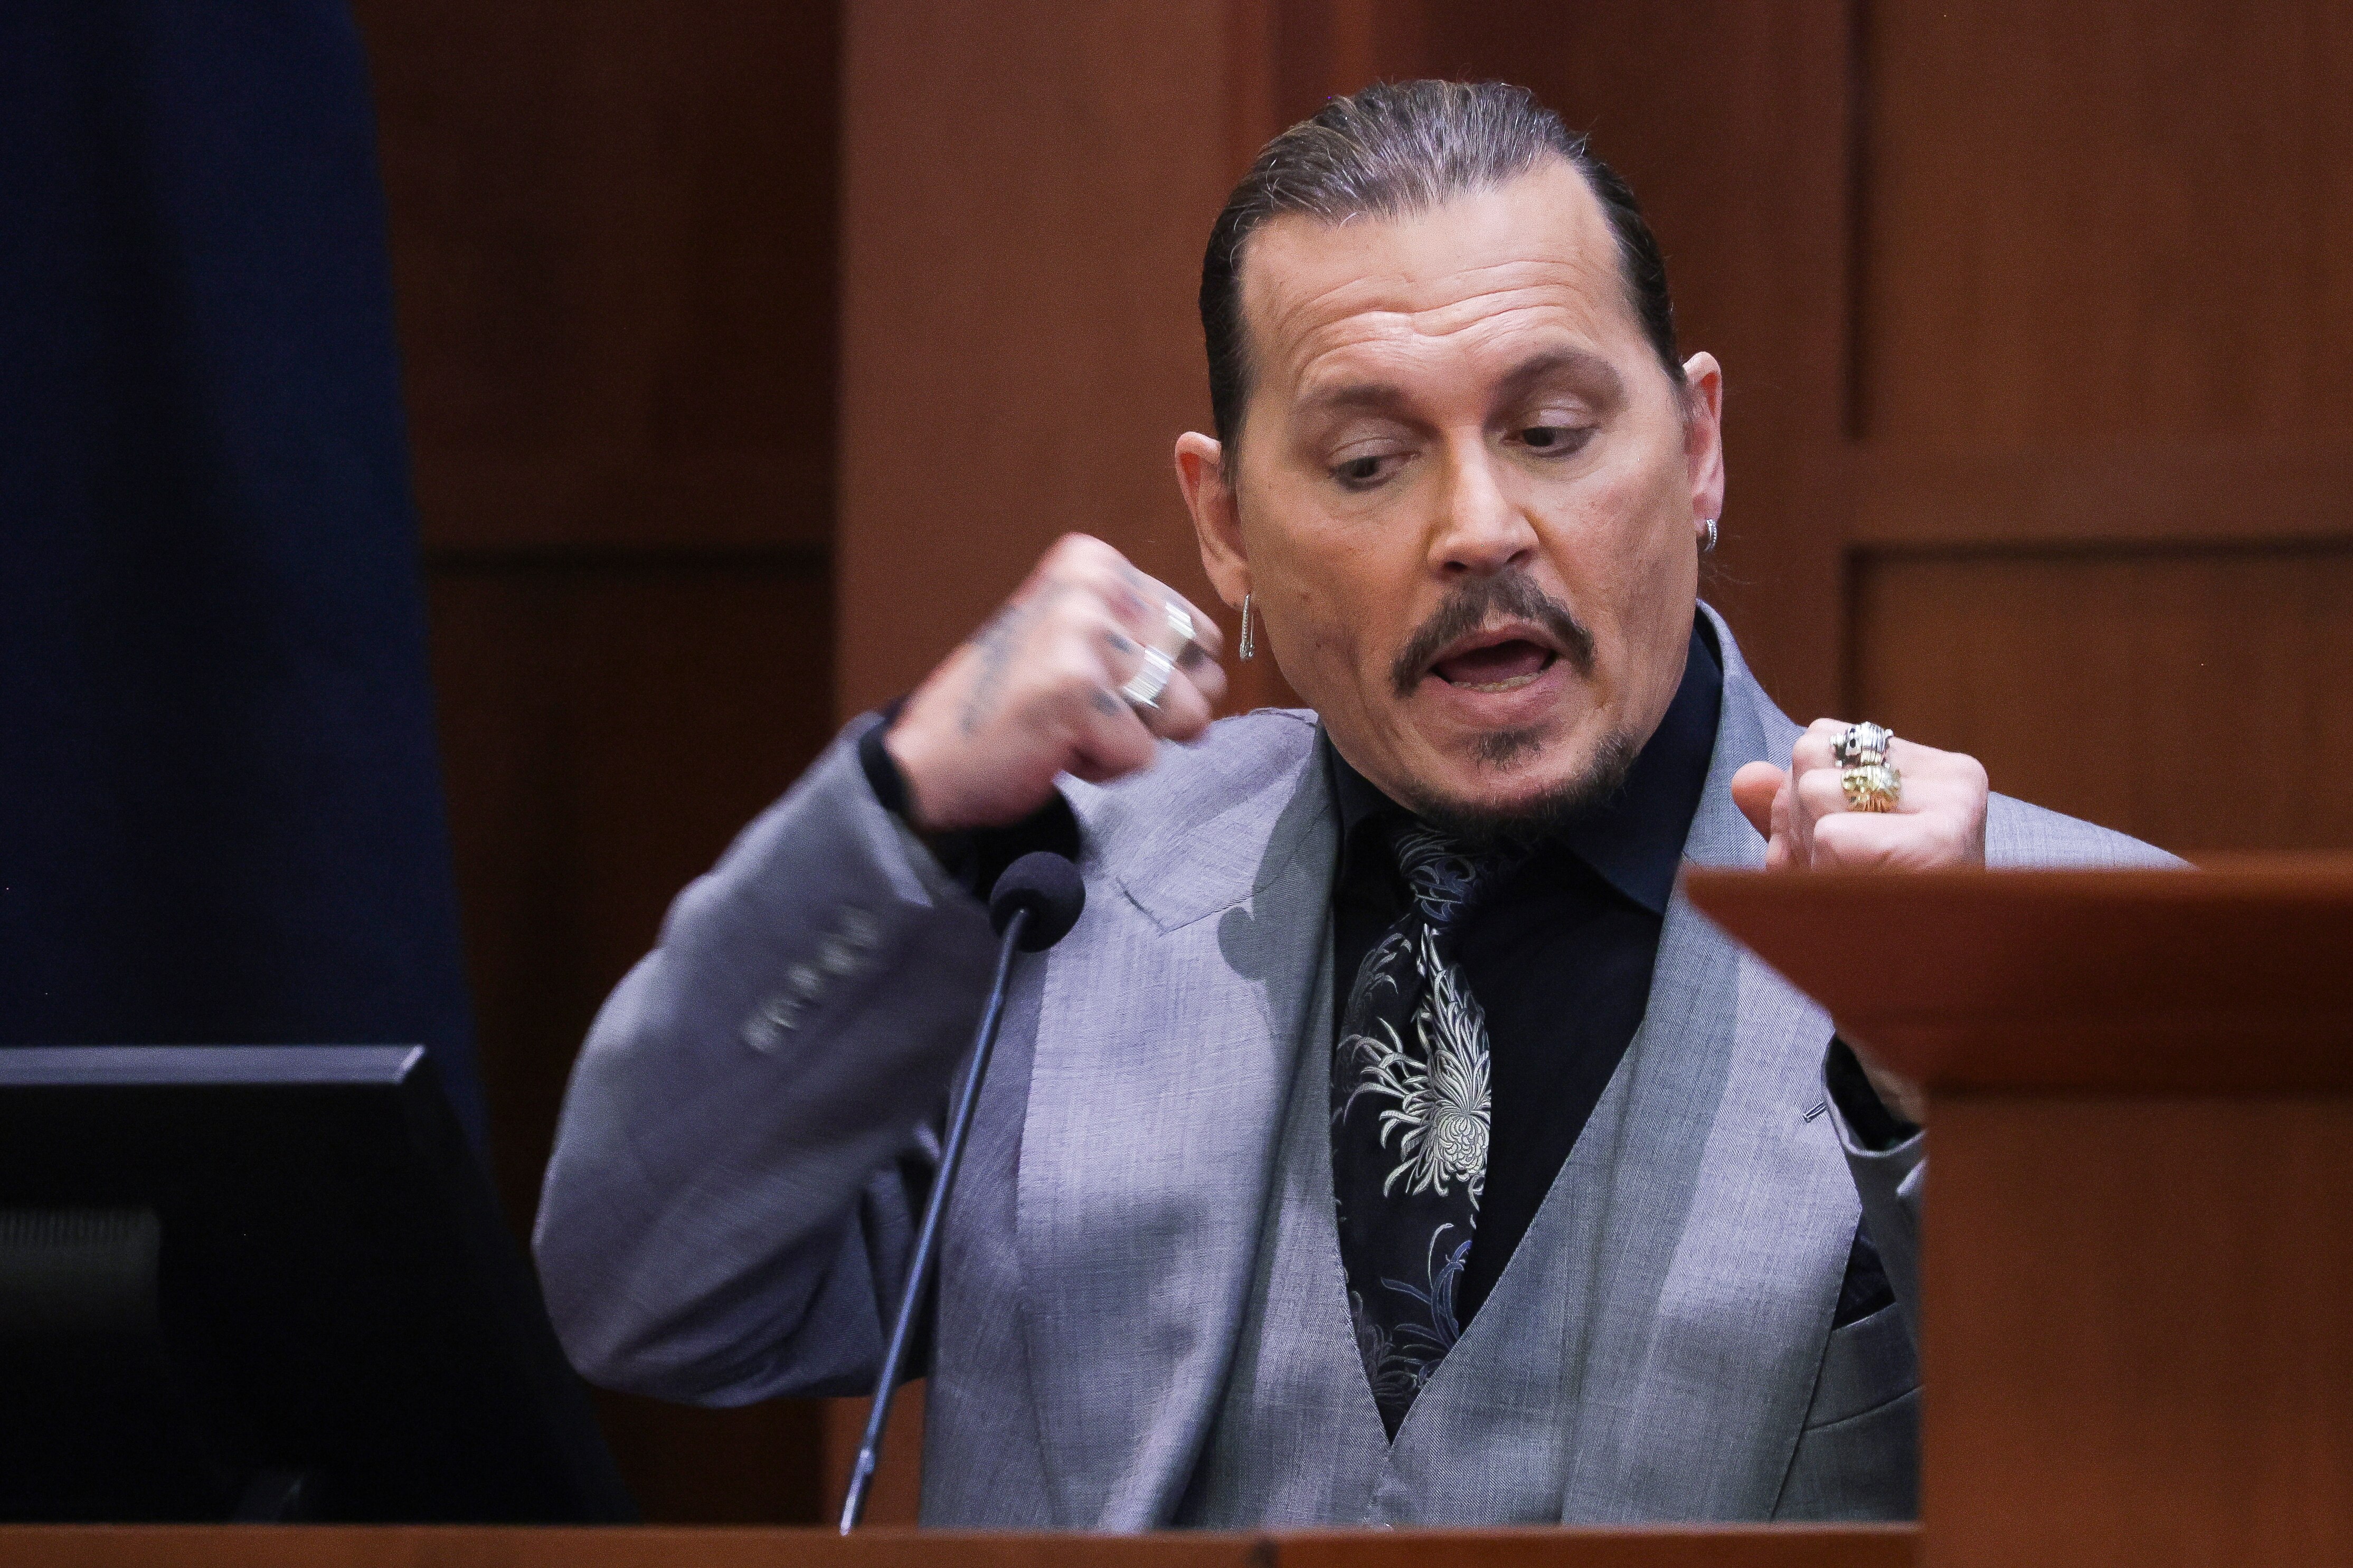 Termina interrogatório de Johnny Depp em julgamento contra sua ex